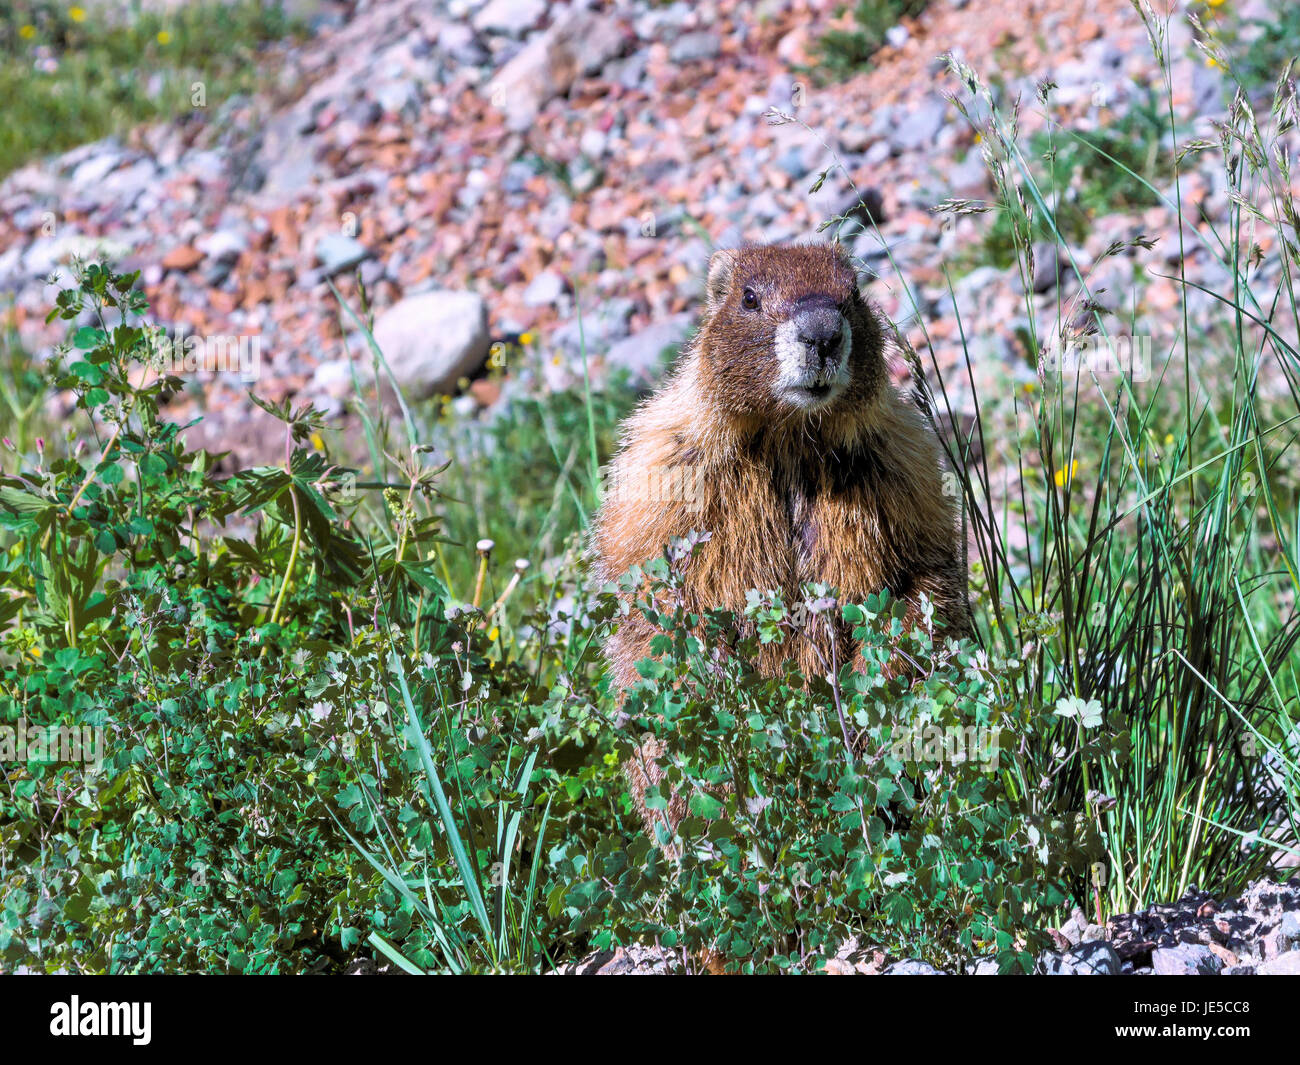 Qué preciosidad esta marmot es. Foto de stock